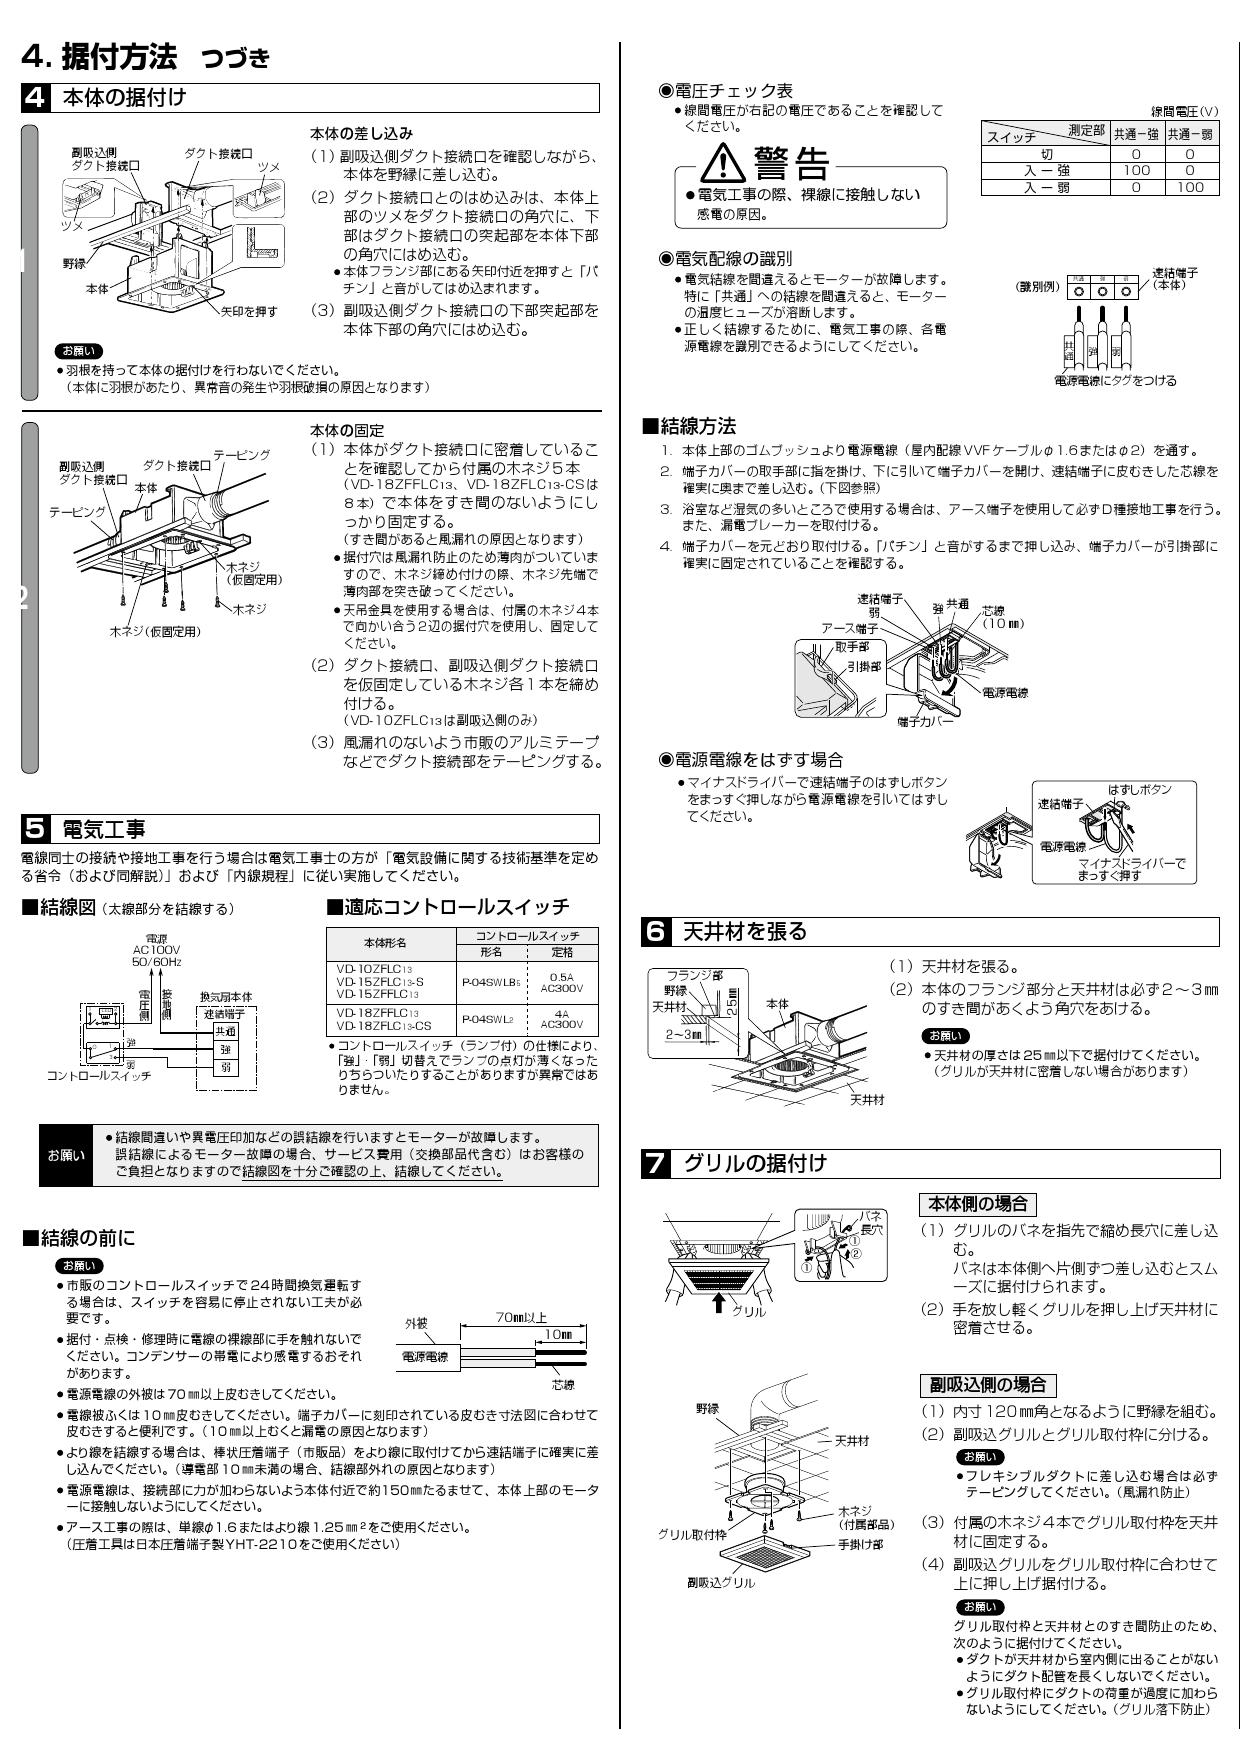 買い誠実 三菱 VD-18ZFLC13-CS 天井埋込形換気扇 2〜3部屋用低騒音形